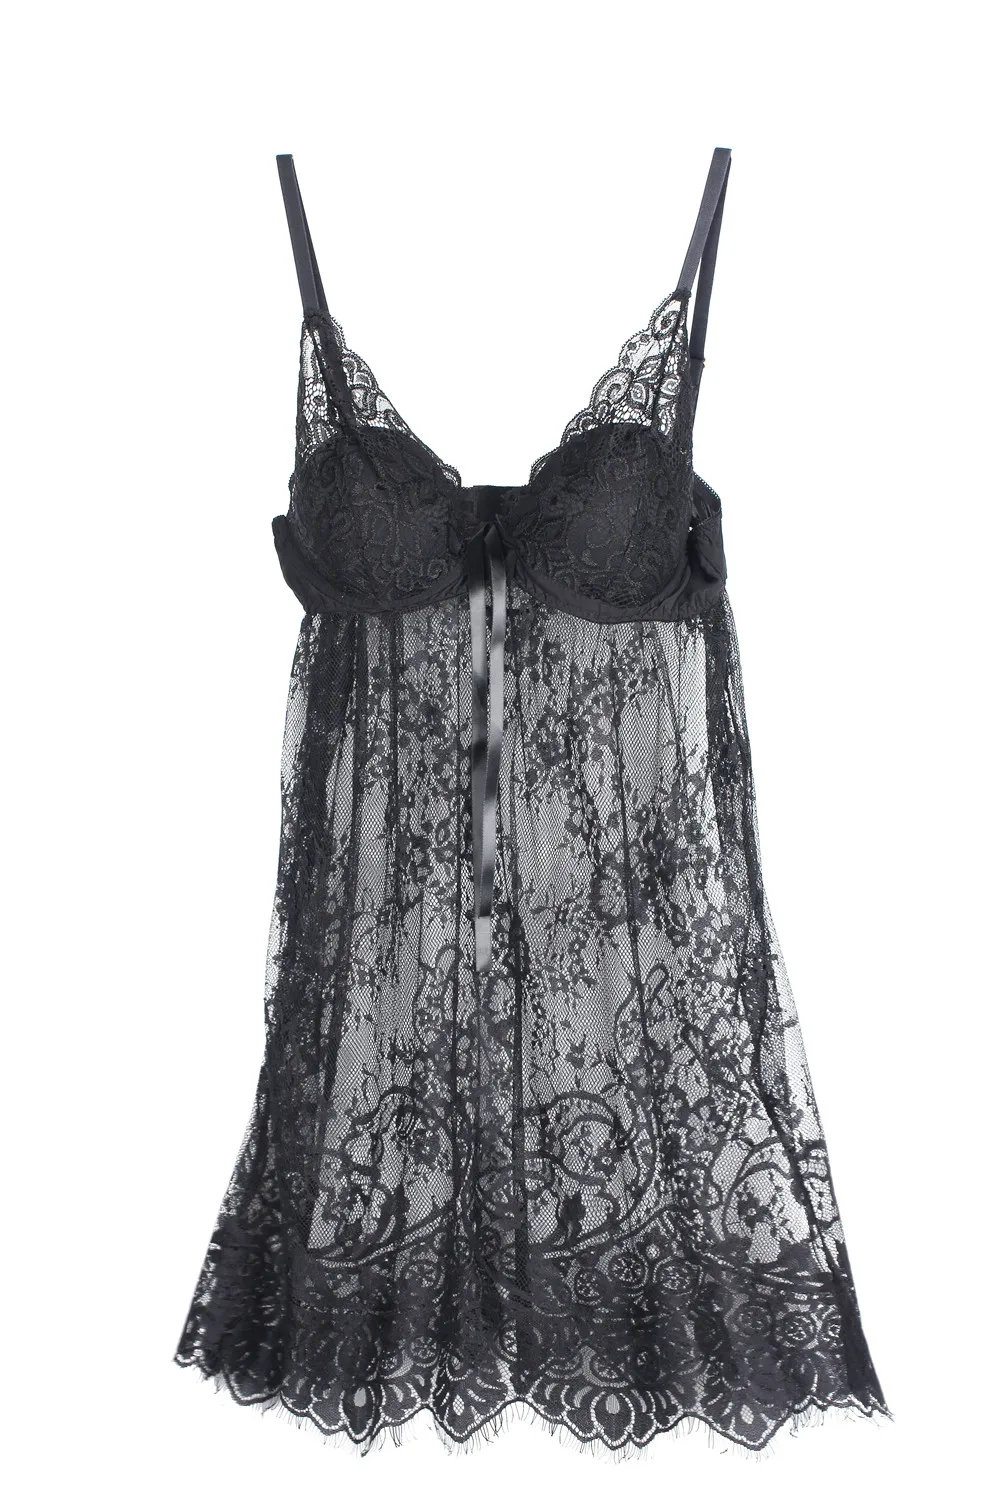 Сексуальная ночная рубашка, ночное белье, Ультра тонкое газовое ночное белье для женщин, французское романтическое милое кружевное прозрачное открытое мини-платье на бретельках